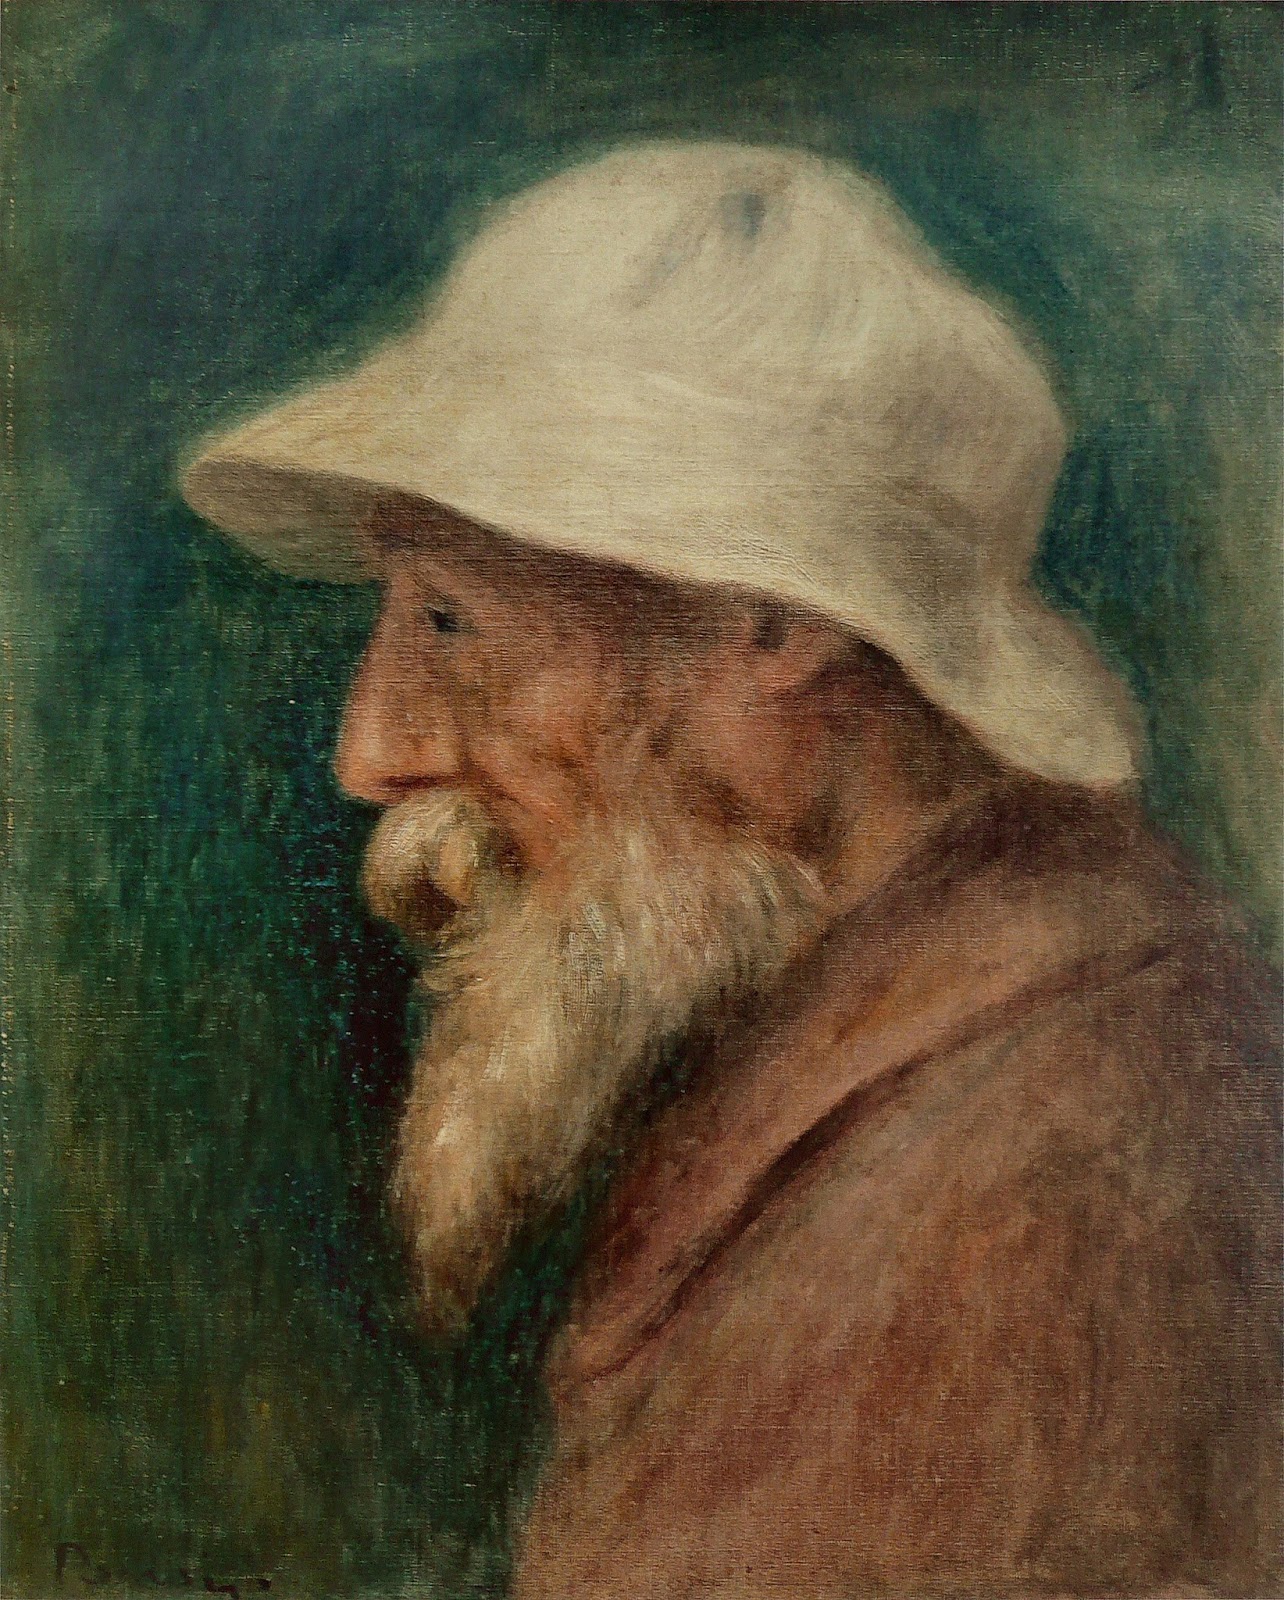 Pierre+Auguste+Renoir-1841-1-19 (629).jpg